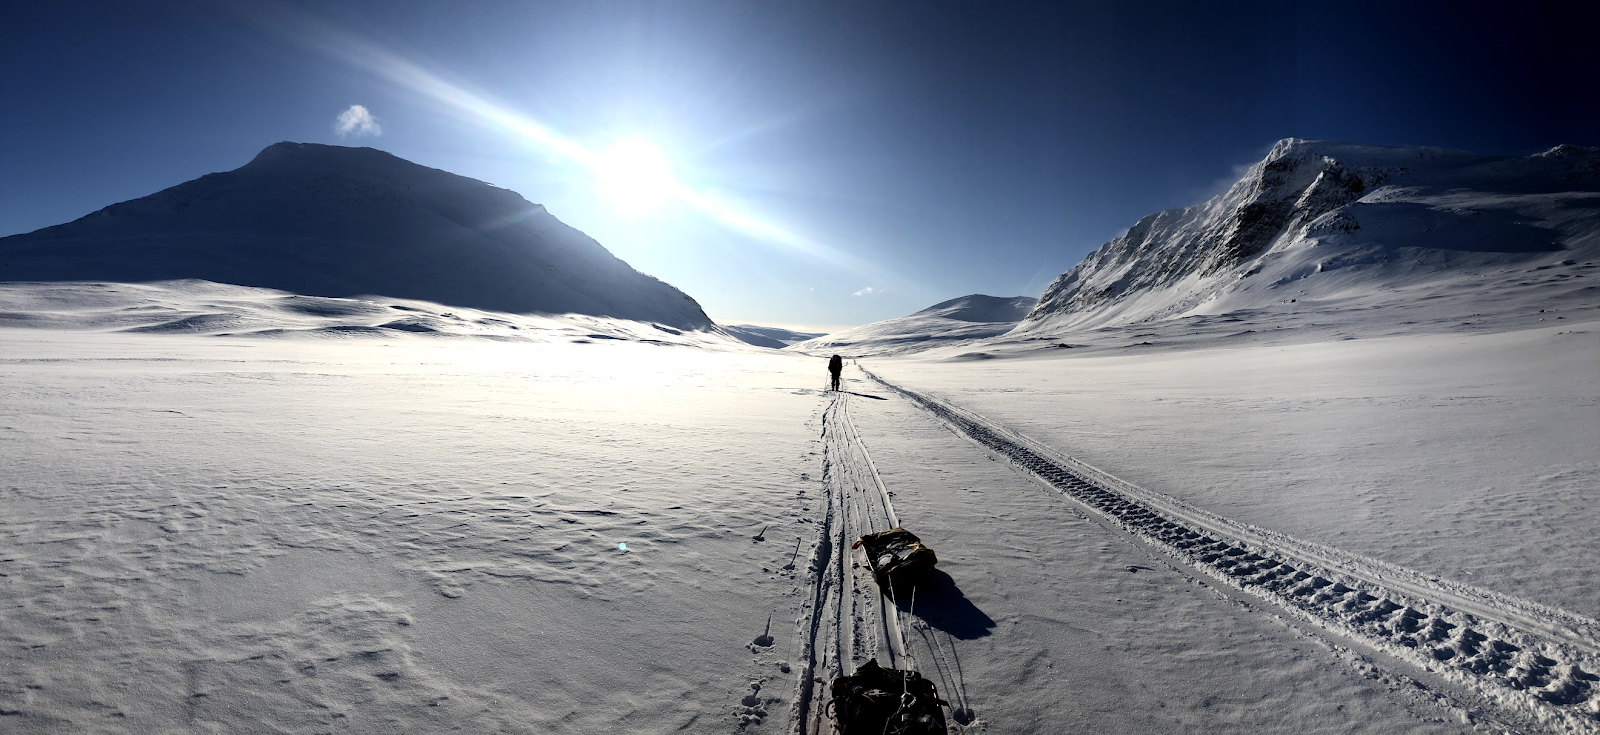 Отчет о лыжном туристском спортивном походе 2 (второй) категории сложности по Северной Швеции (Кунгследен)